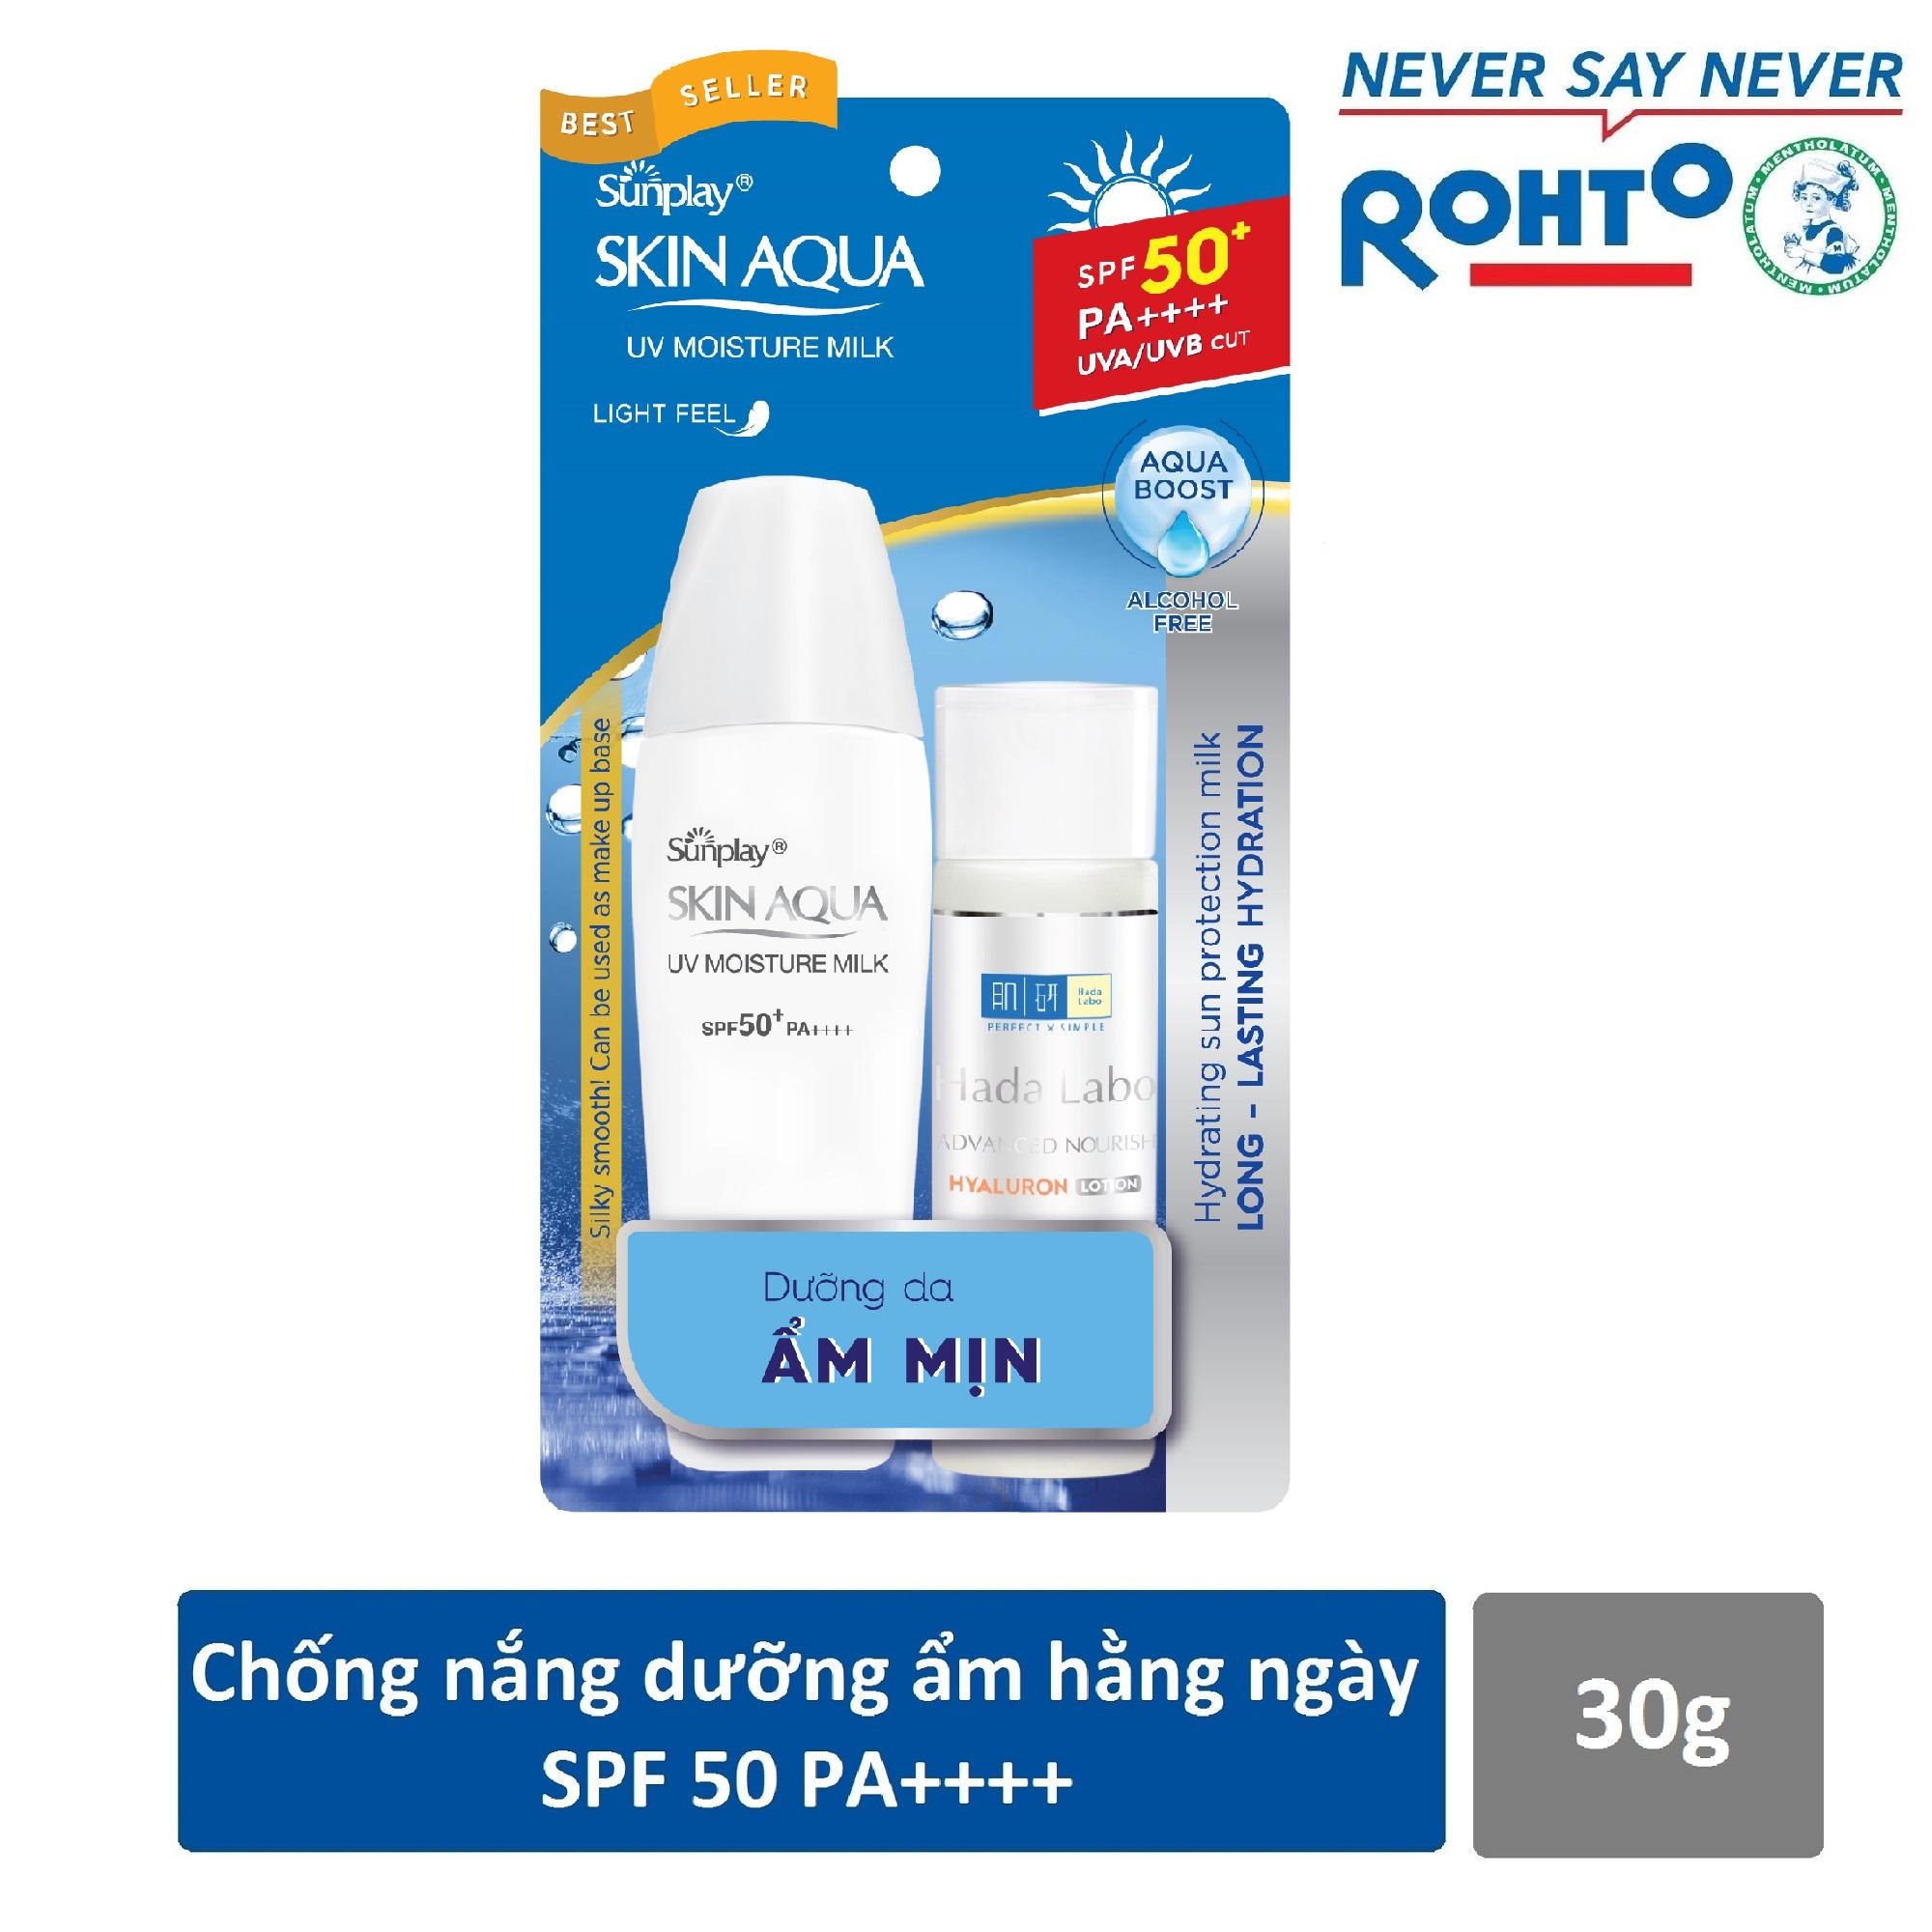 Sữa chống nắng hằng ngày dưỡng da giữ ẩm Sunplay Skin Aqua UV Moisture SPF50+ PA+++ 30g - Tặng 1...